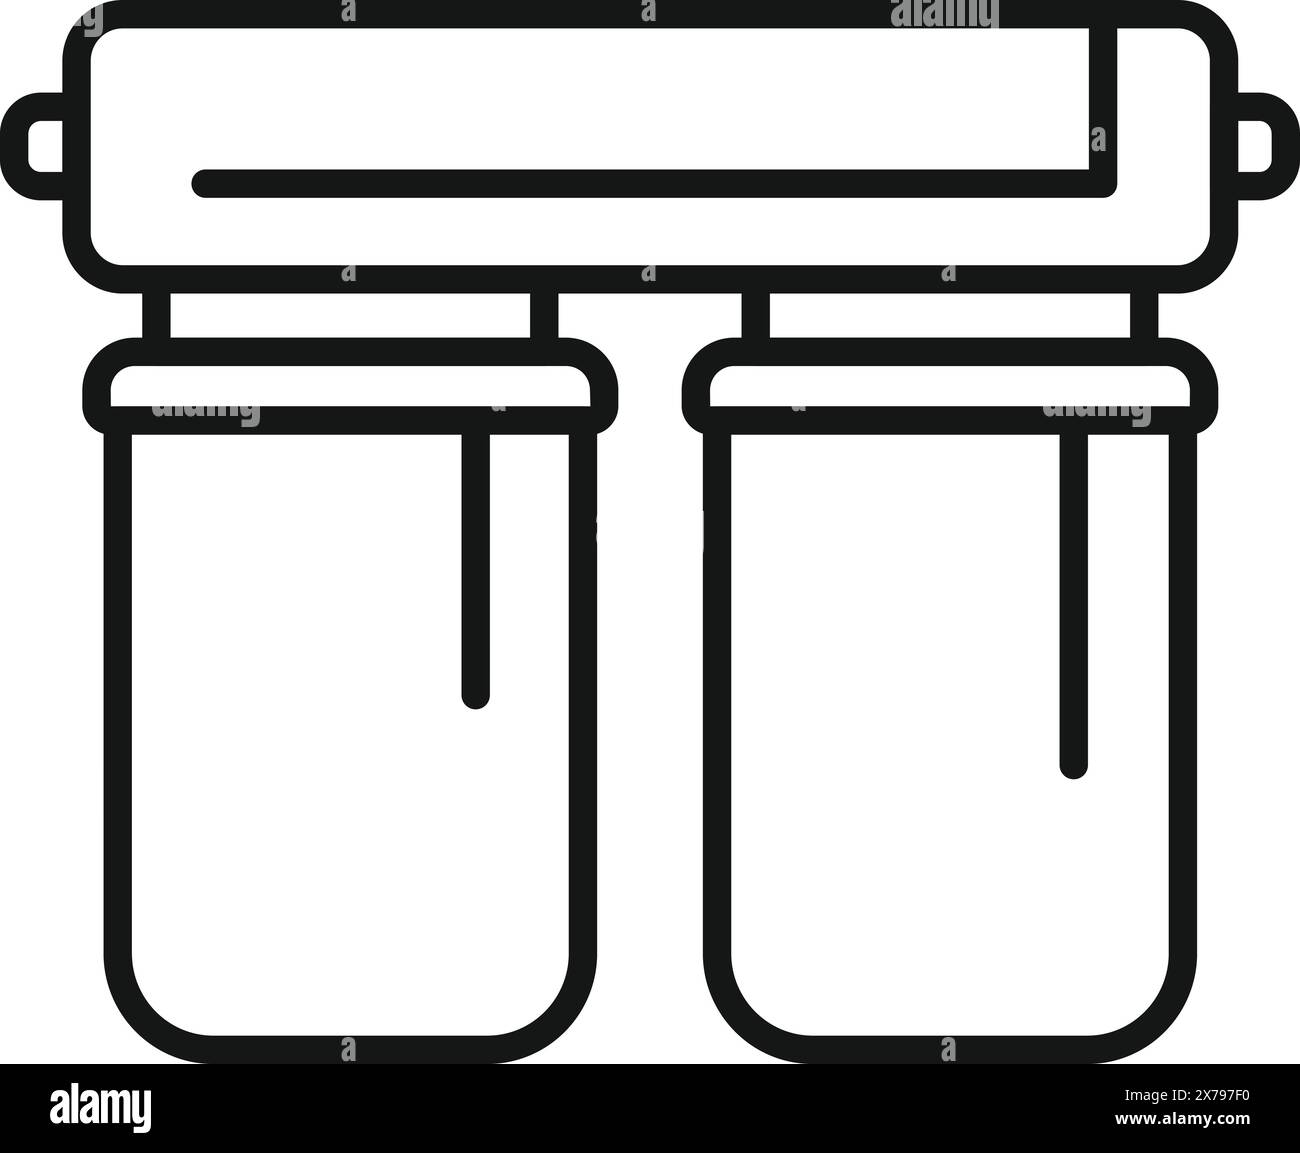 Illustrazione vettoriale di una semplice icona di purificazione dell'acqua in bianco e nero per un'acqua potabile pulita e sicura. Raffigurante un sistema di filtraggio per elettrodomestici e per la cucina Illustrazione Vettoriale